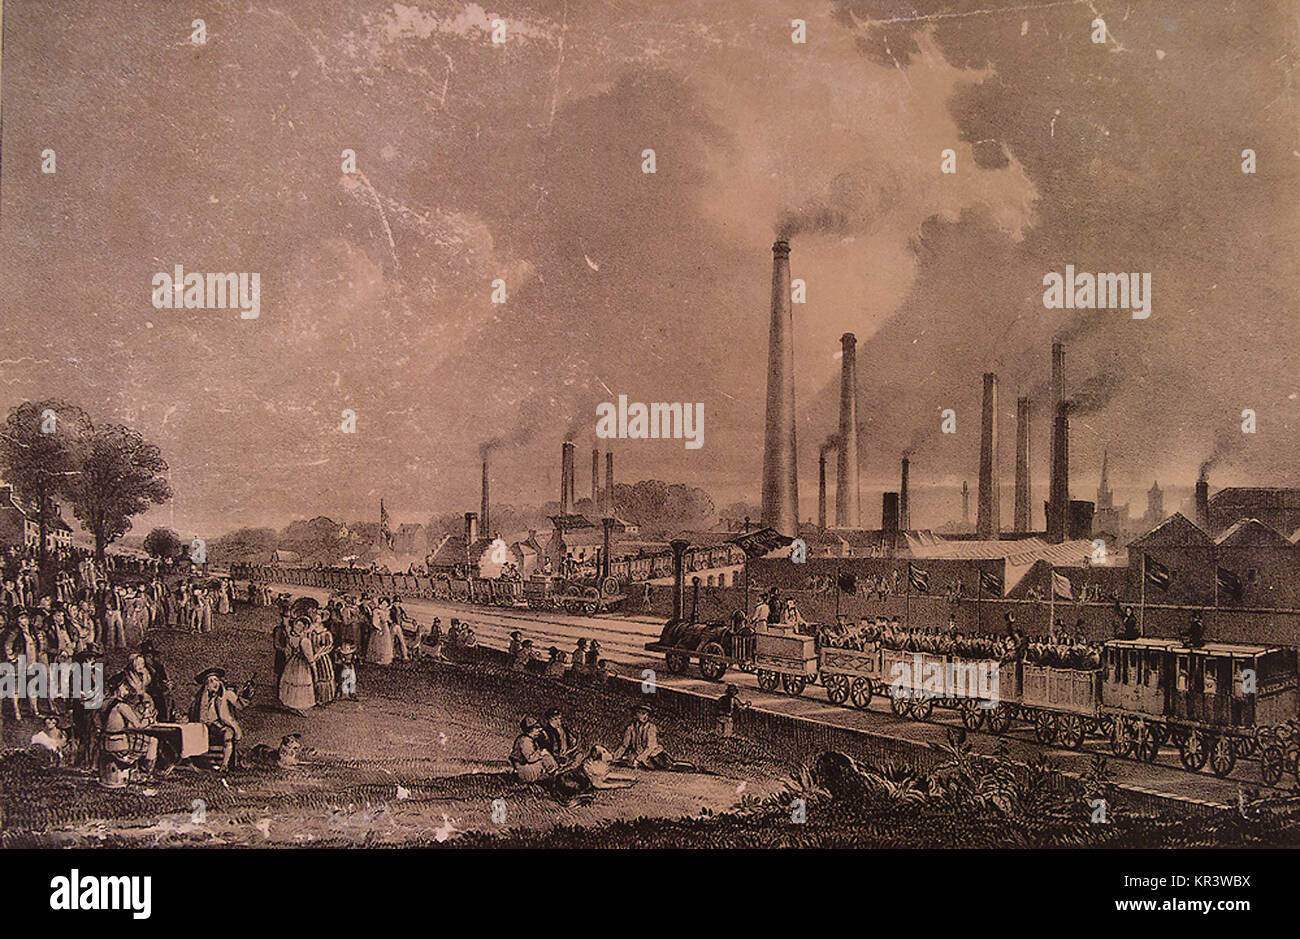 Los niveles de contaminación del aire aumentó durante la Revolución Industrial, desencadenando la primera legislación ambiental moderna para ser aprobado a mediados del siglo XIX. Foto de stock